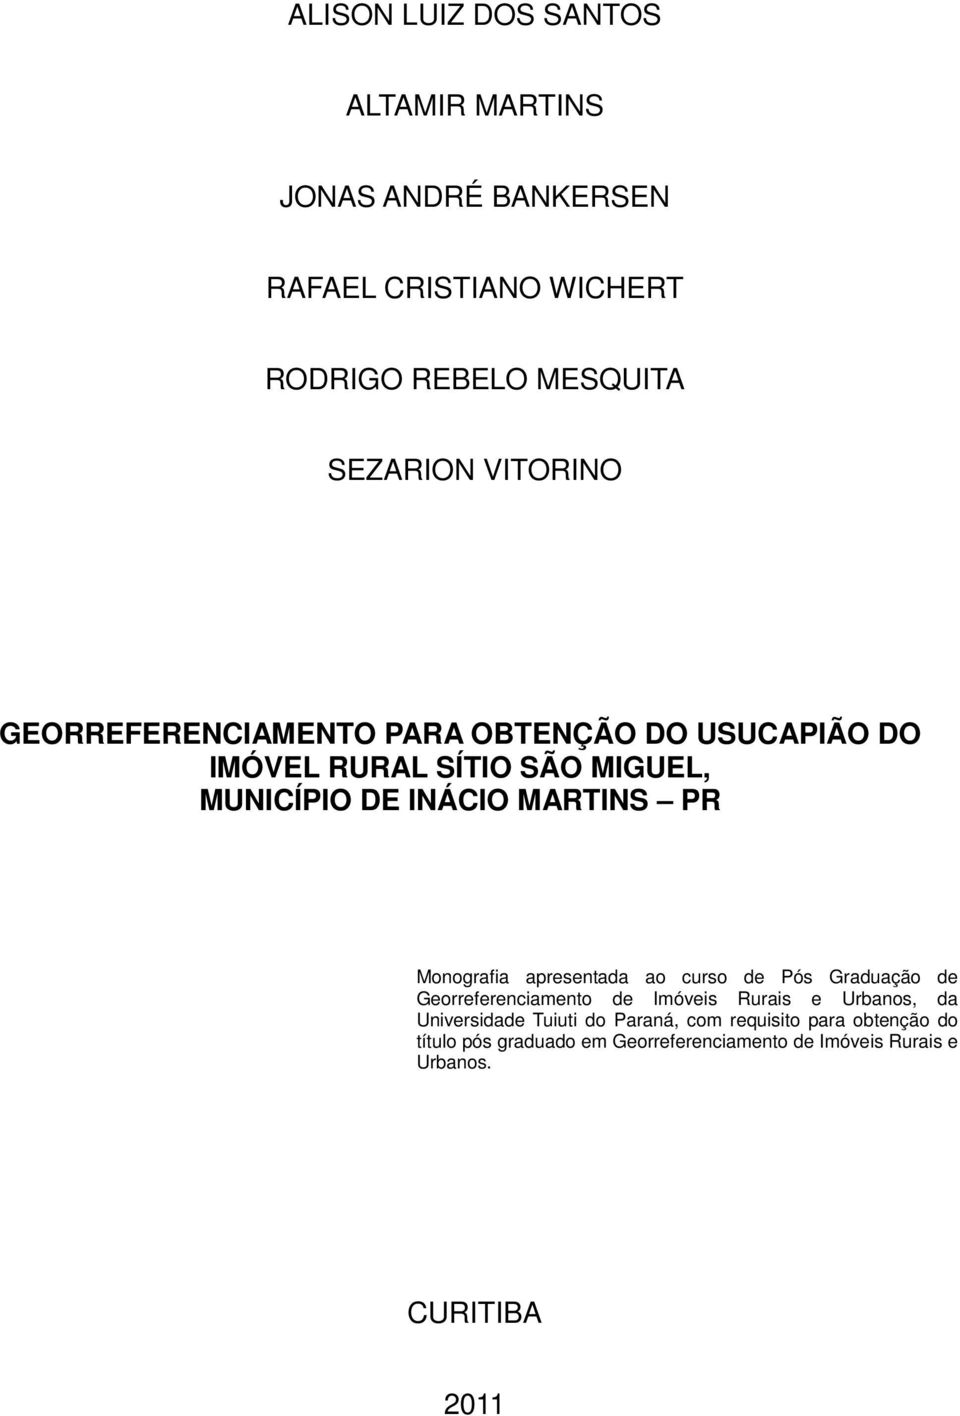 Monografia apresentada ao curso de Pós Graduação de Georreferenciamento de Imóveis Rurais e Urbanos, da Universidade